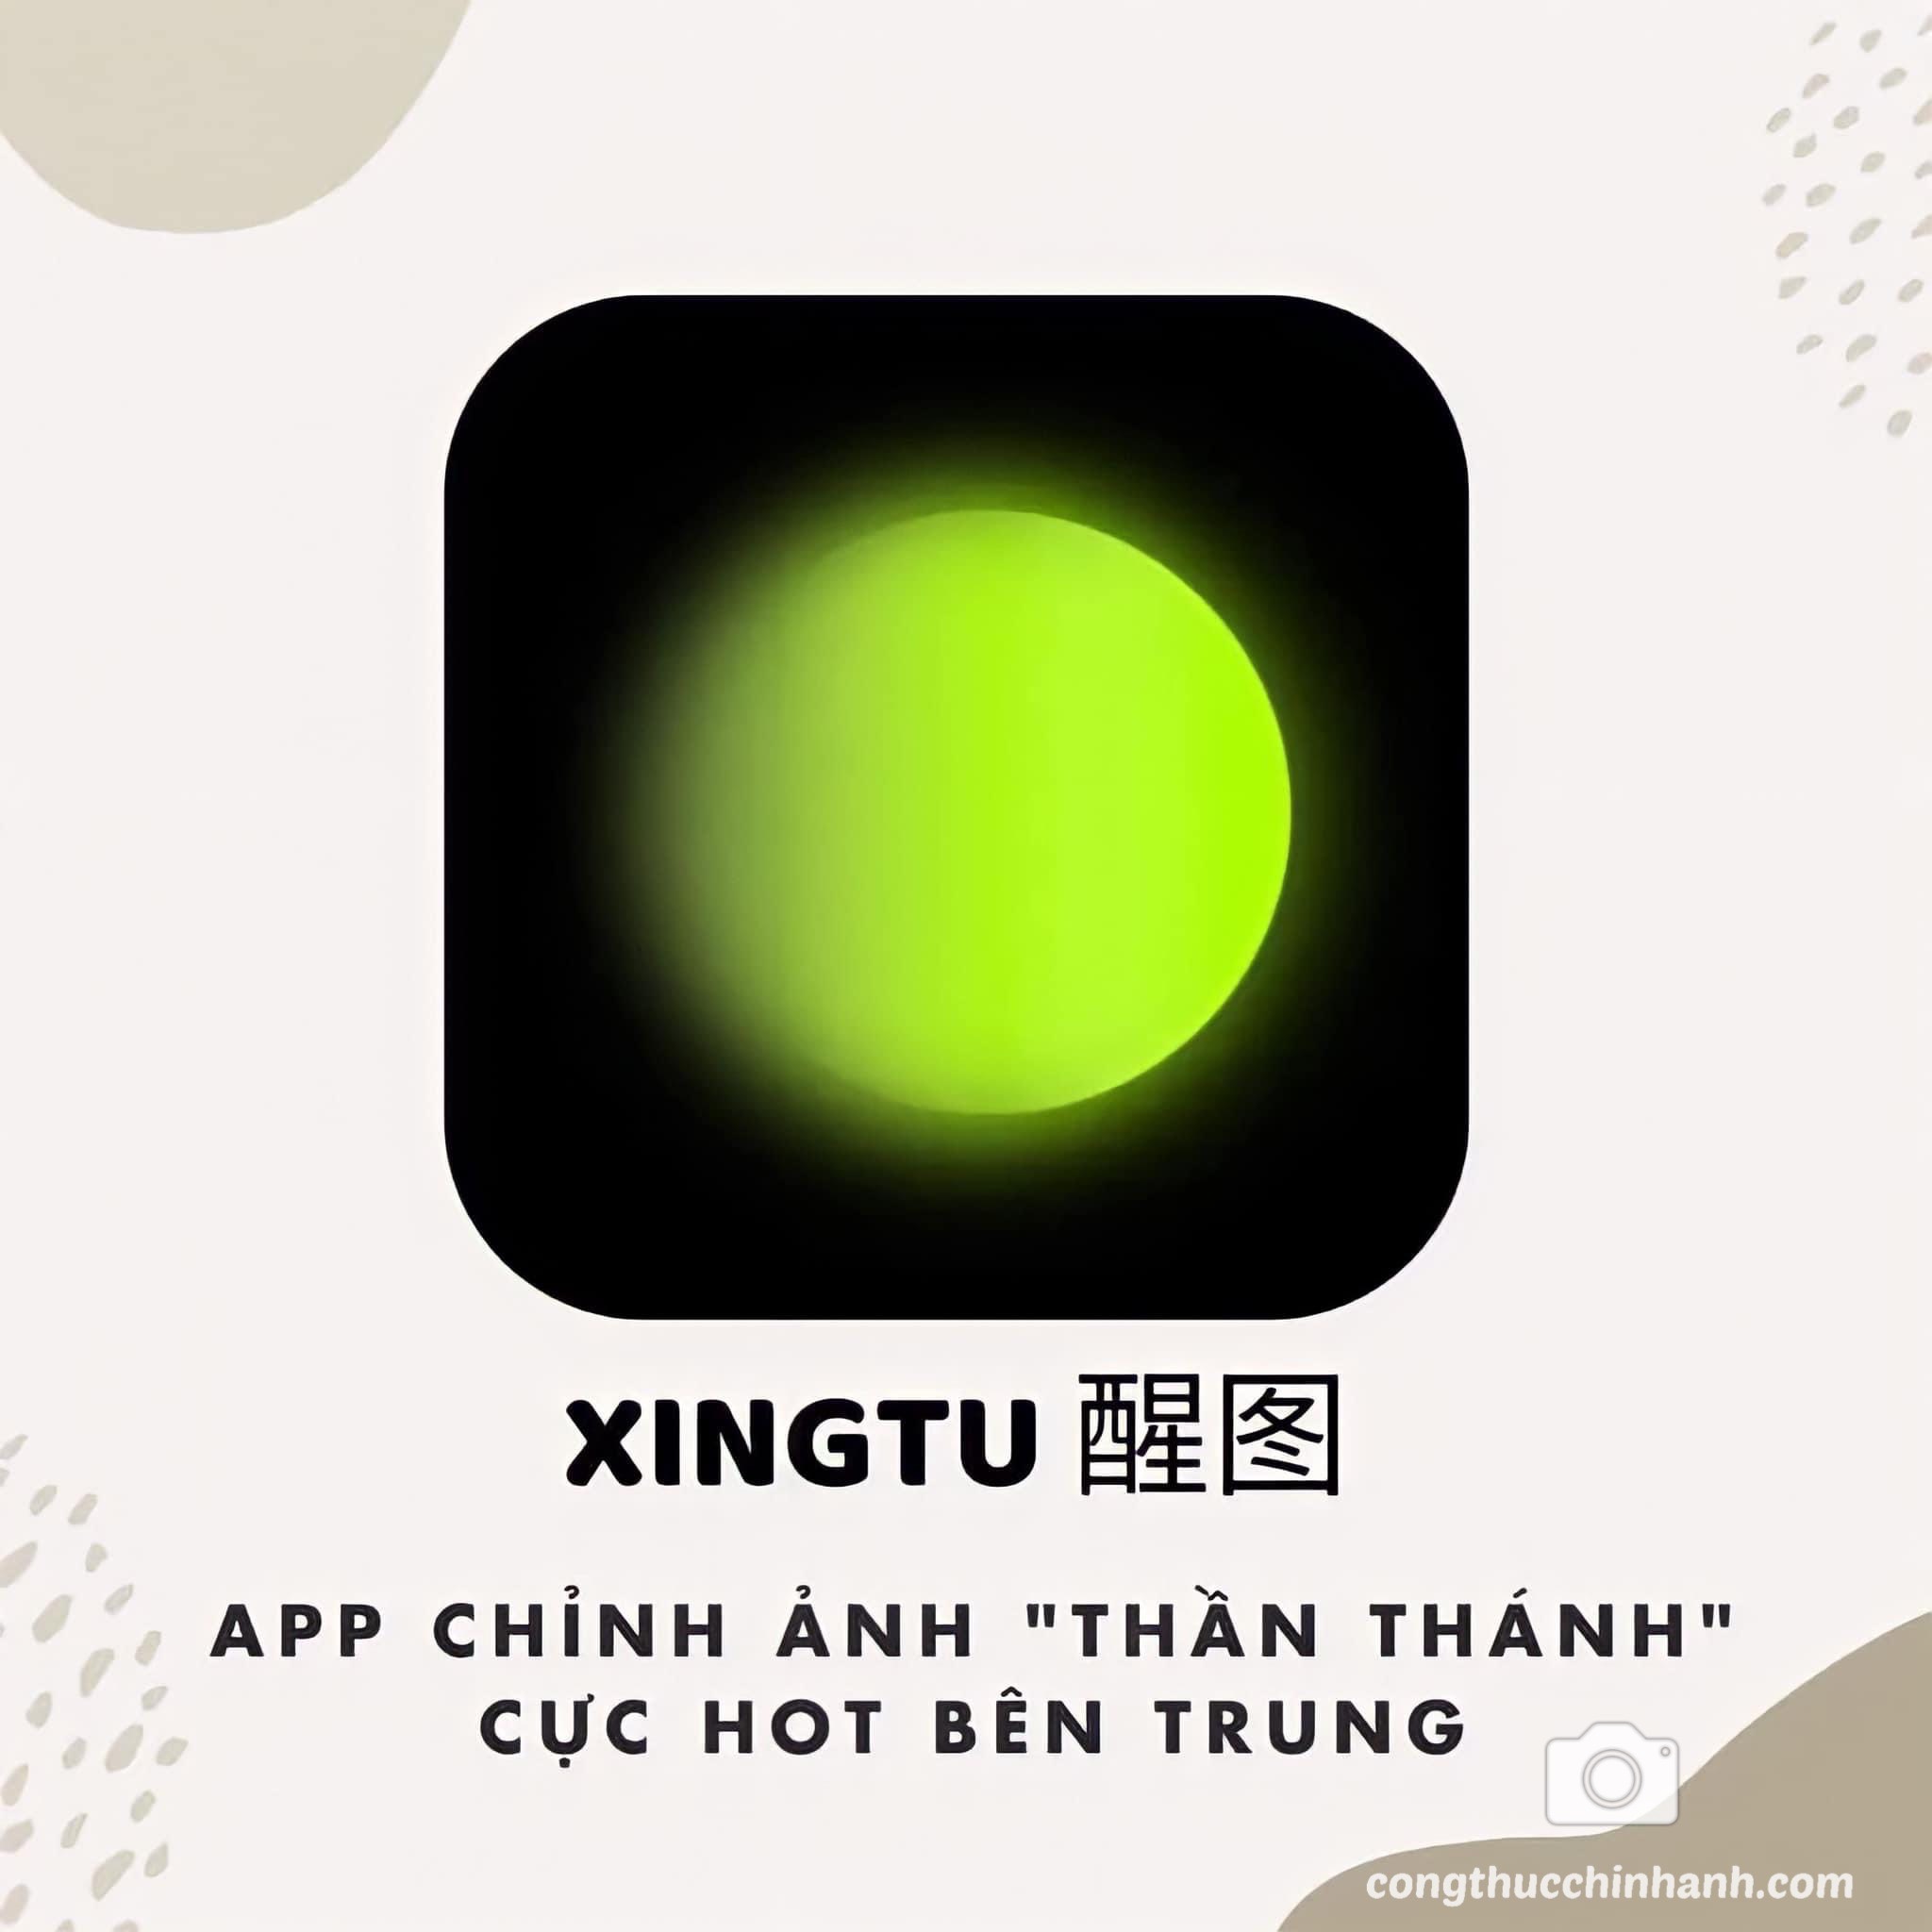 Read more about the article Mua app Xingtu Vip sử dụng vĩnh viễn – giá rẻ hiện nay